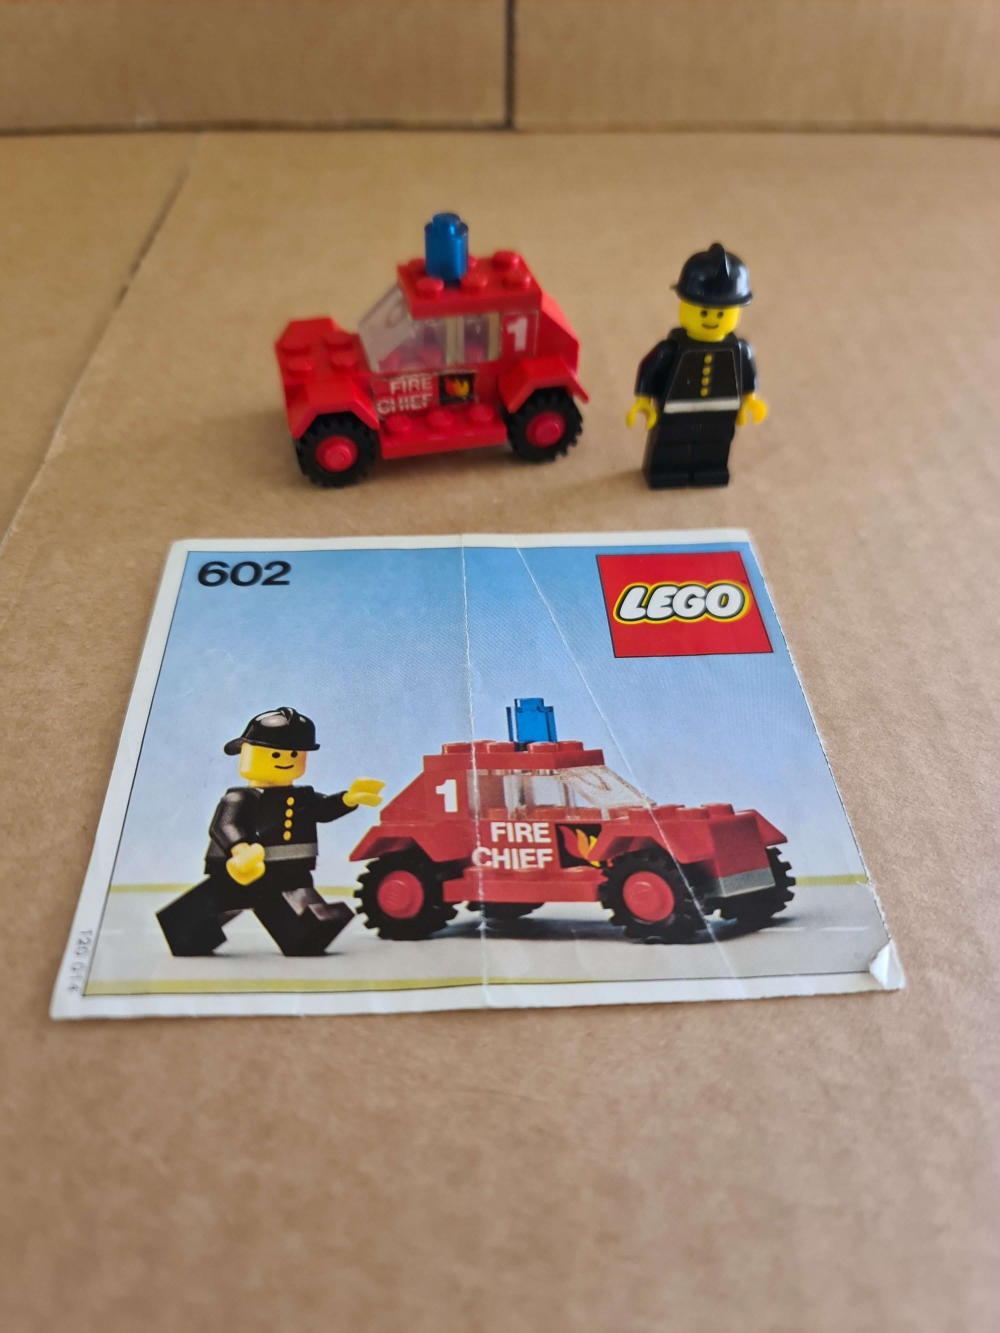 Sett 602 fra Lego Classic Town serien.

Komplett med manual. Ikke de peneste klistremerkene men alle er på.